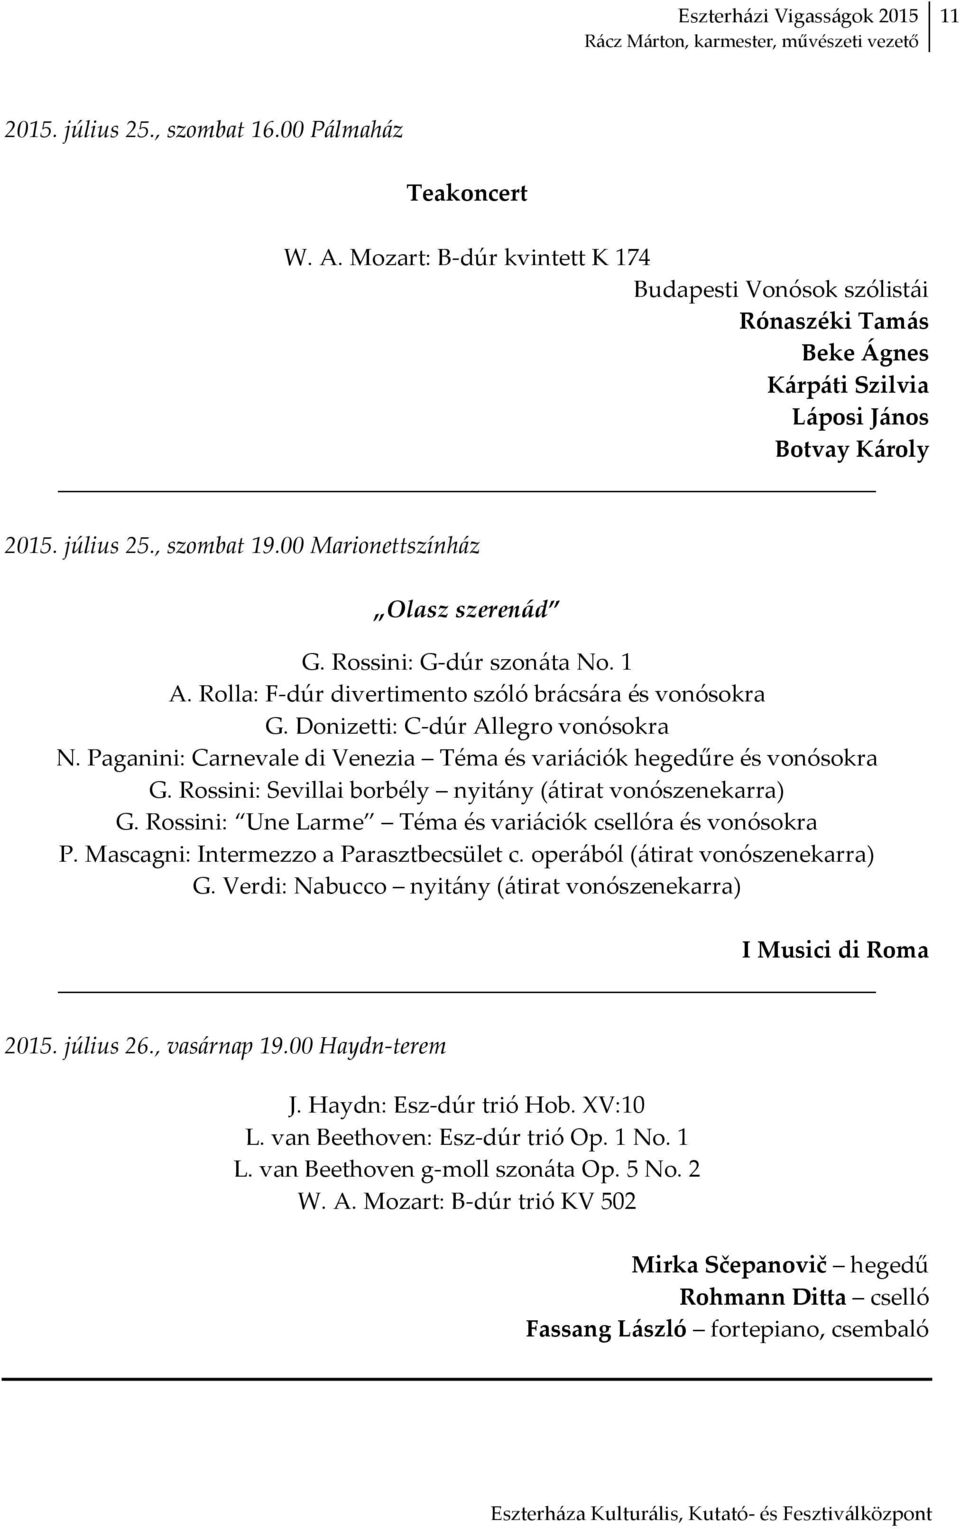 Paganini: Carnevale di Venezia Téma és variációk hegedűre és vonósokra G. Rossini: Sevillai borbély nyitány (átirat vonószenekarra) G. Rossini: Une Larme Téma és variációk csellóra és vonósokra P.